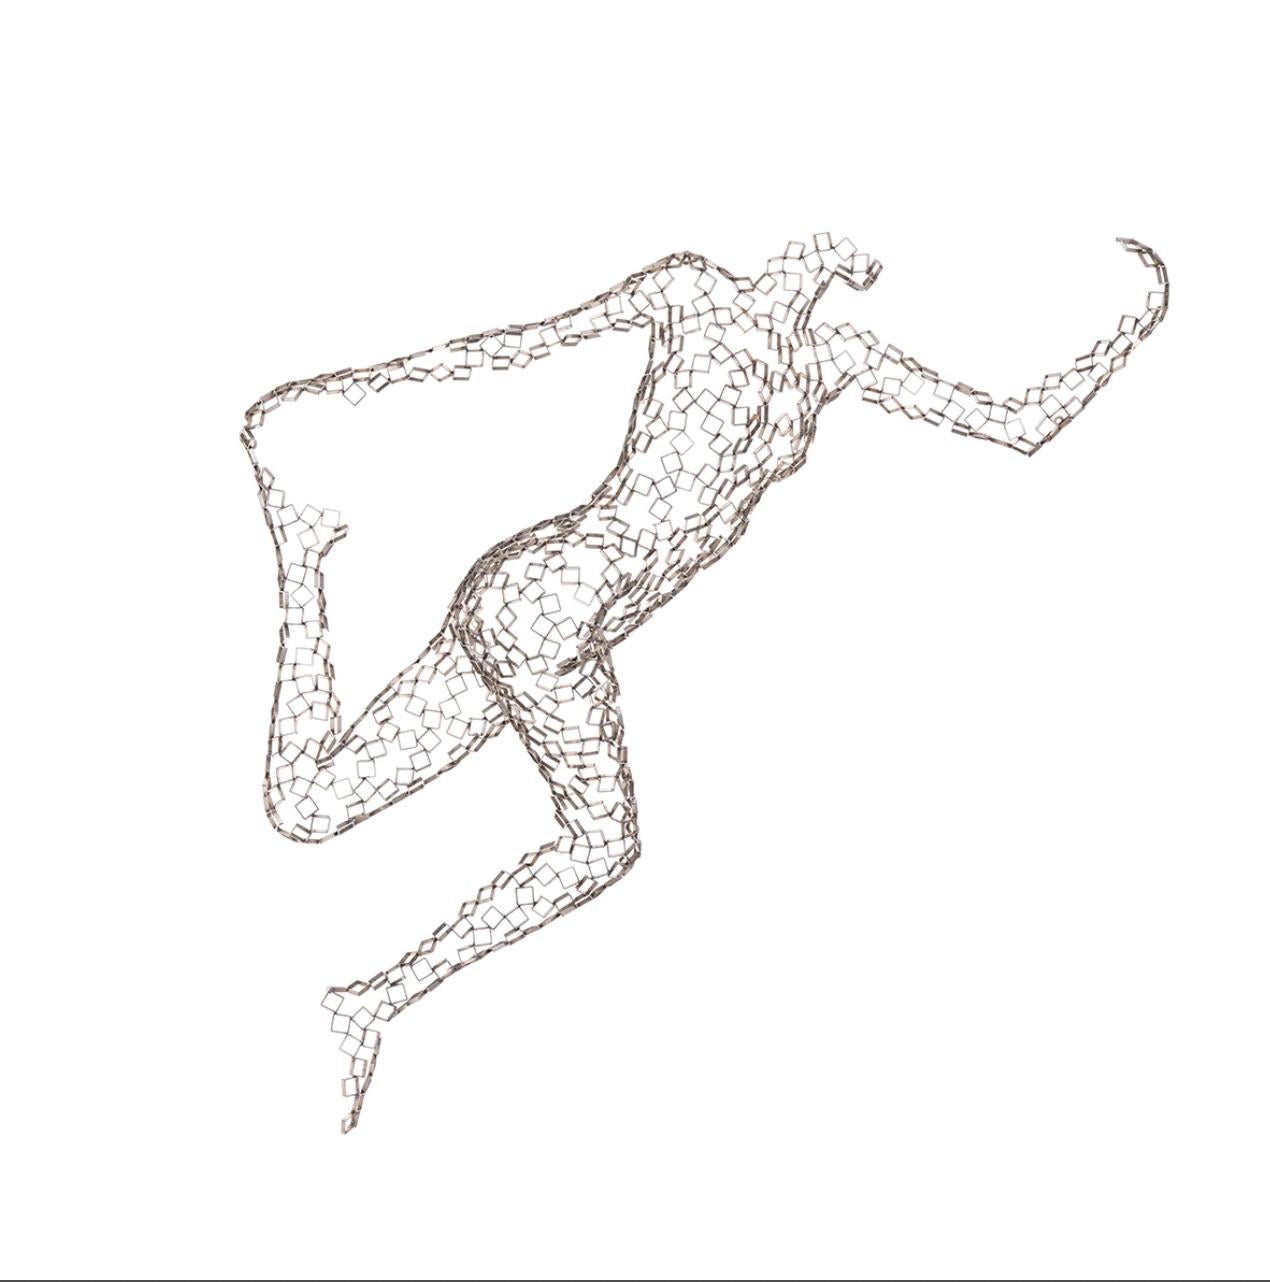 Dancer Isidora - Sculpture by Rainer Lagemann